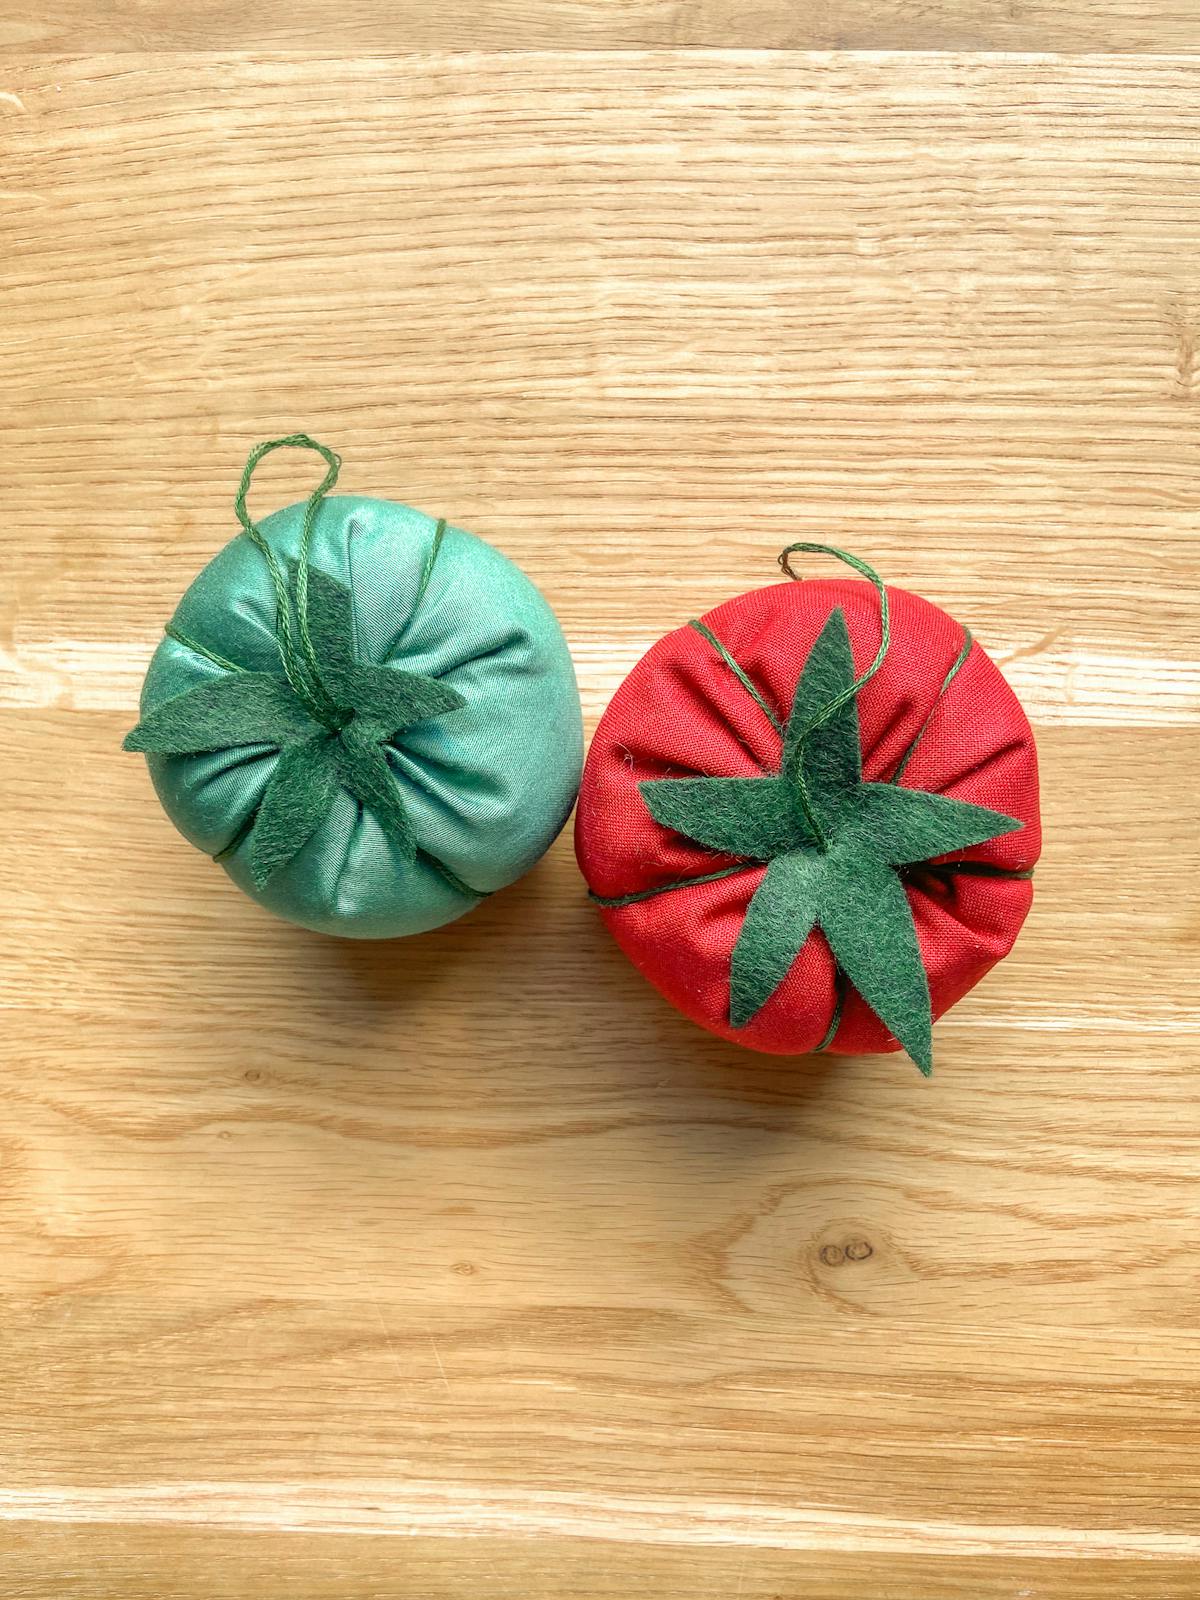  Afgewerkte tomaatvormige speldenkussens in groen en rood op een houten tafel